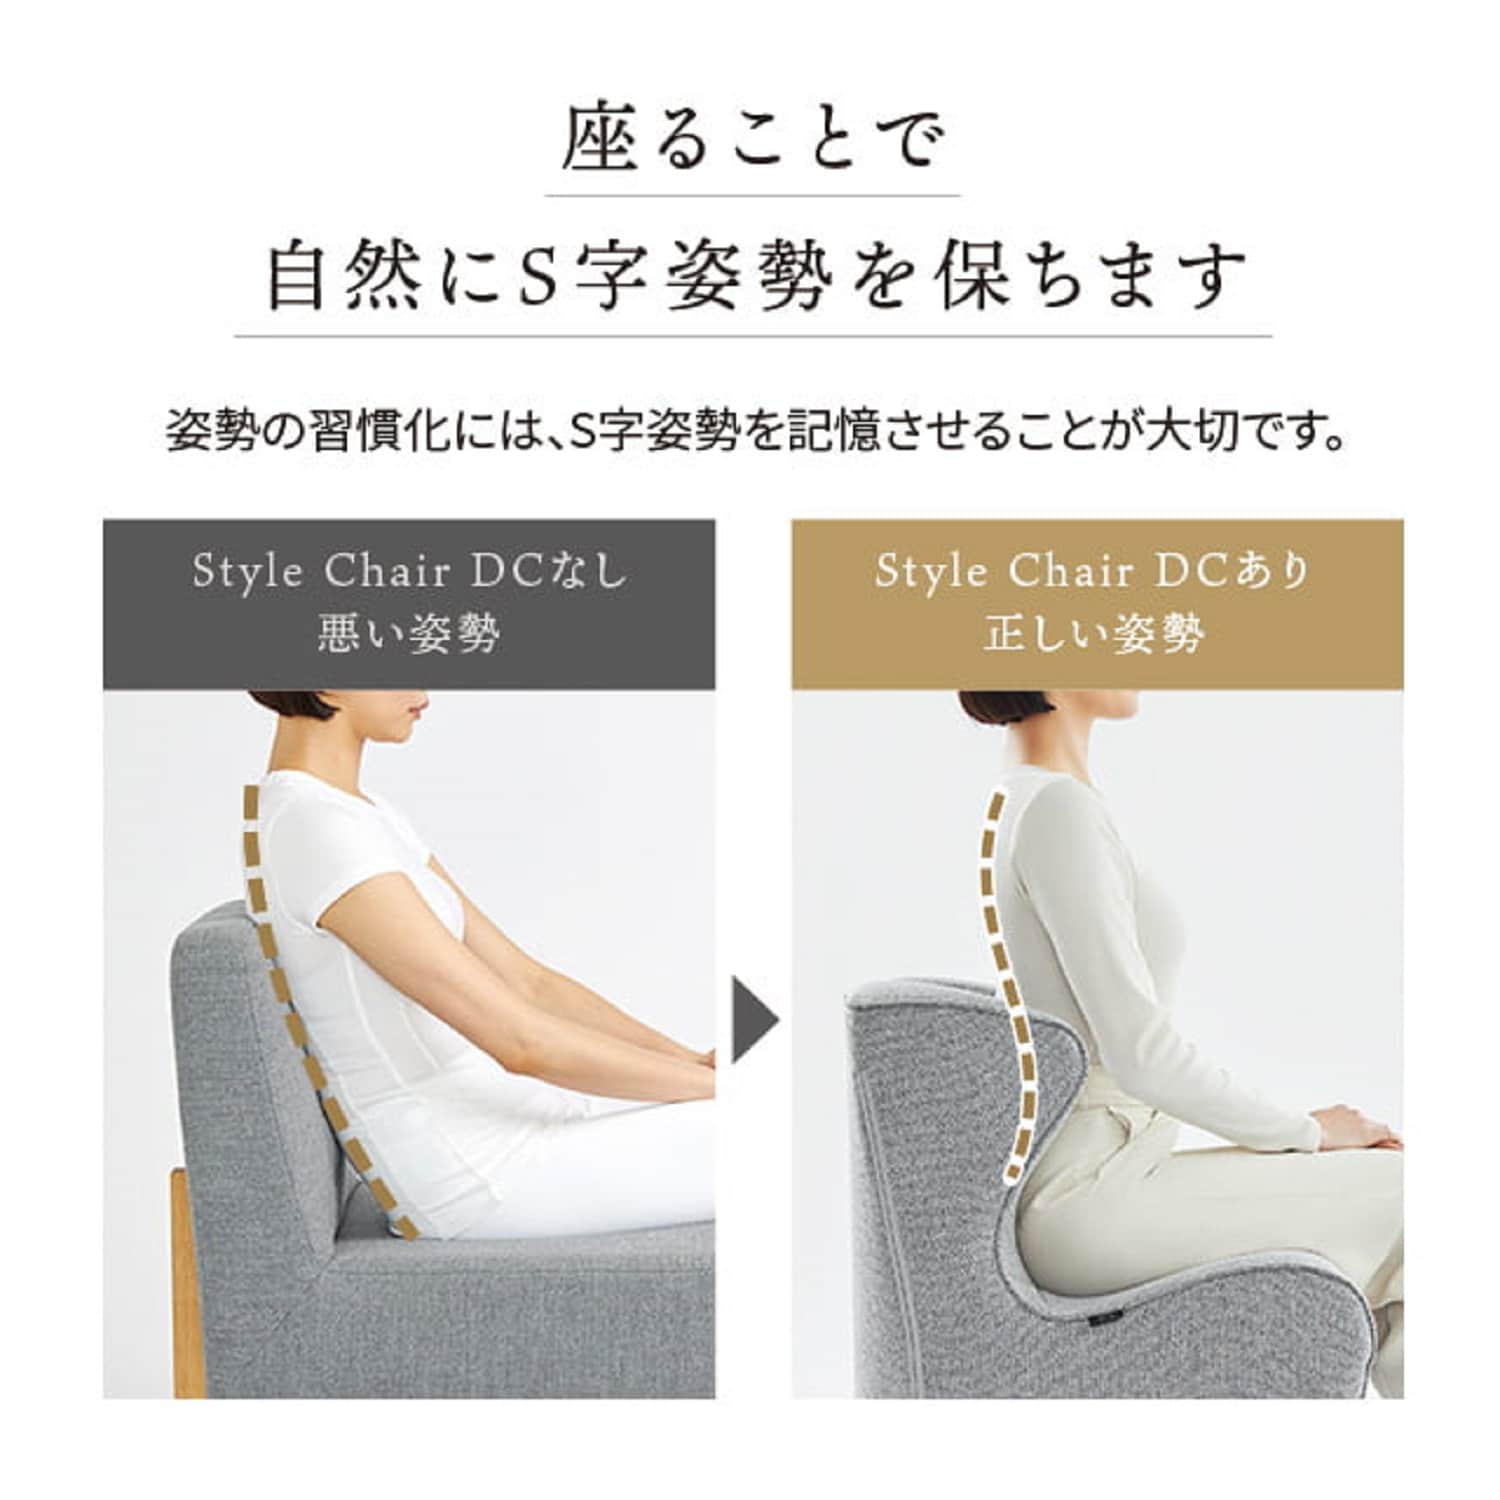 Style Chair Dc 　スタイルチェアディーシー腰をやさしく支える体圧を分散し